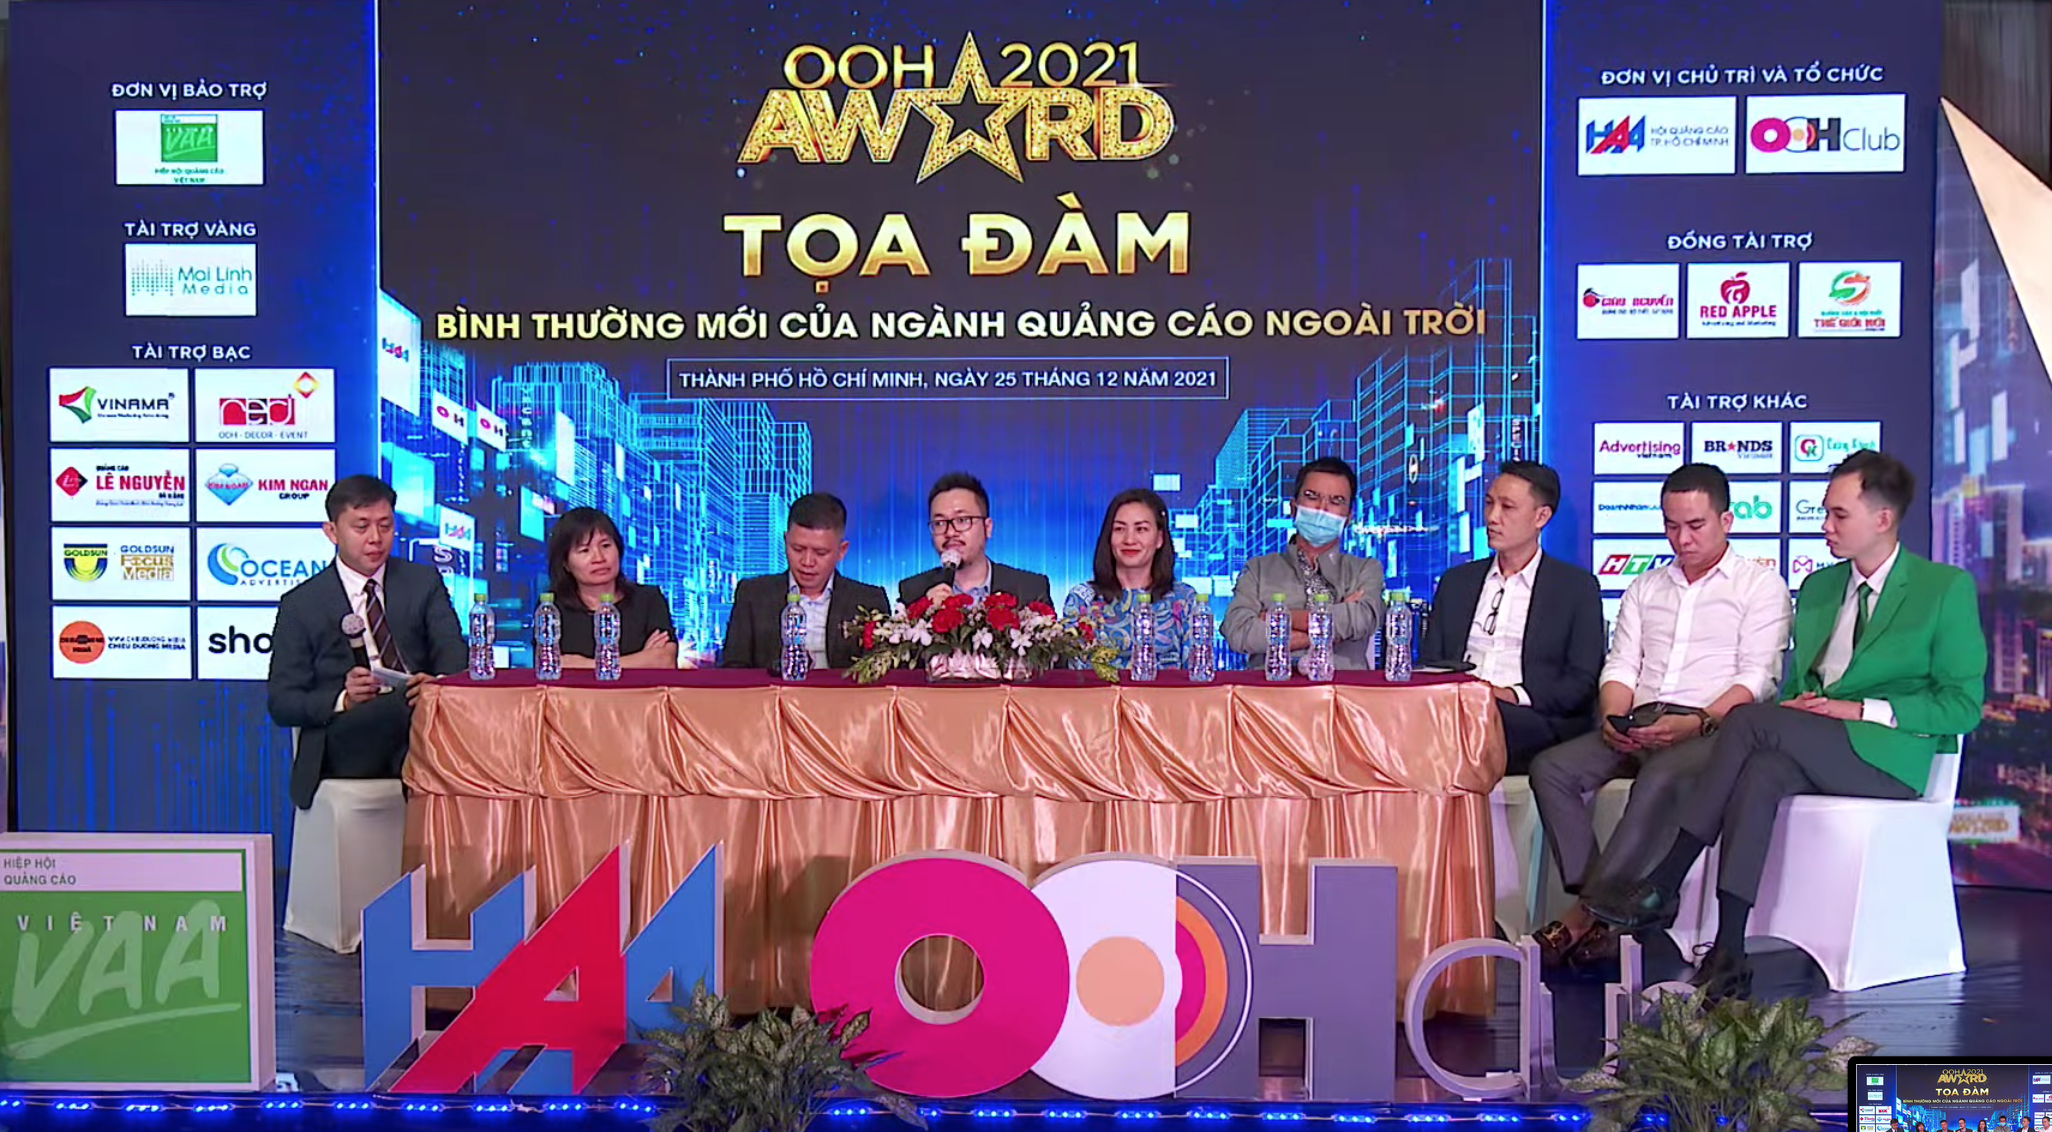 Tọa đàm 'Bình thường mới của ngành quảng cáo ngoài trời' được tổ chức trong khuôn khổ lễ trao giải 'OOH Award' do OOHClub trực thuộc Hội Quảng cáo TP.HCM tổ chức, với sự bảo trợ của Hiệp hội Quảng cáo Việt Nam - Ảnh: B.MAi